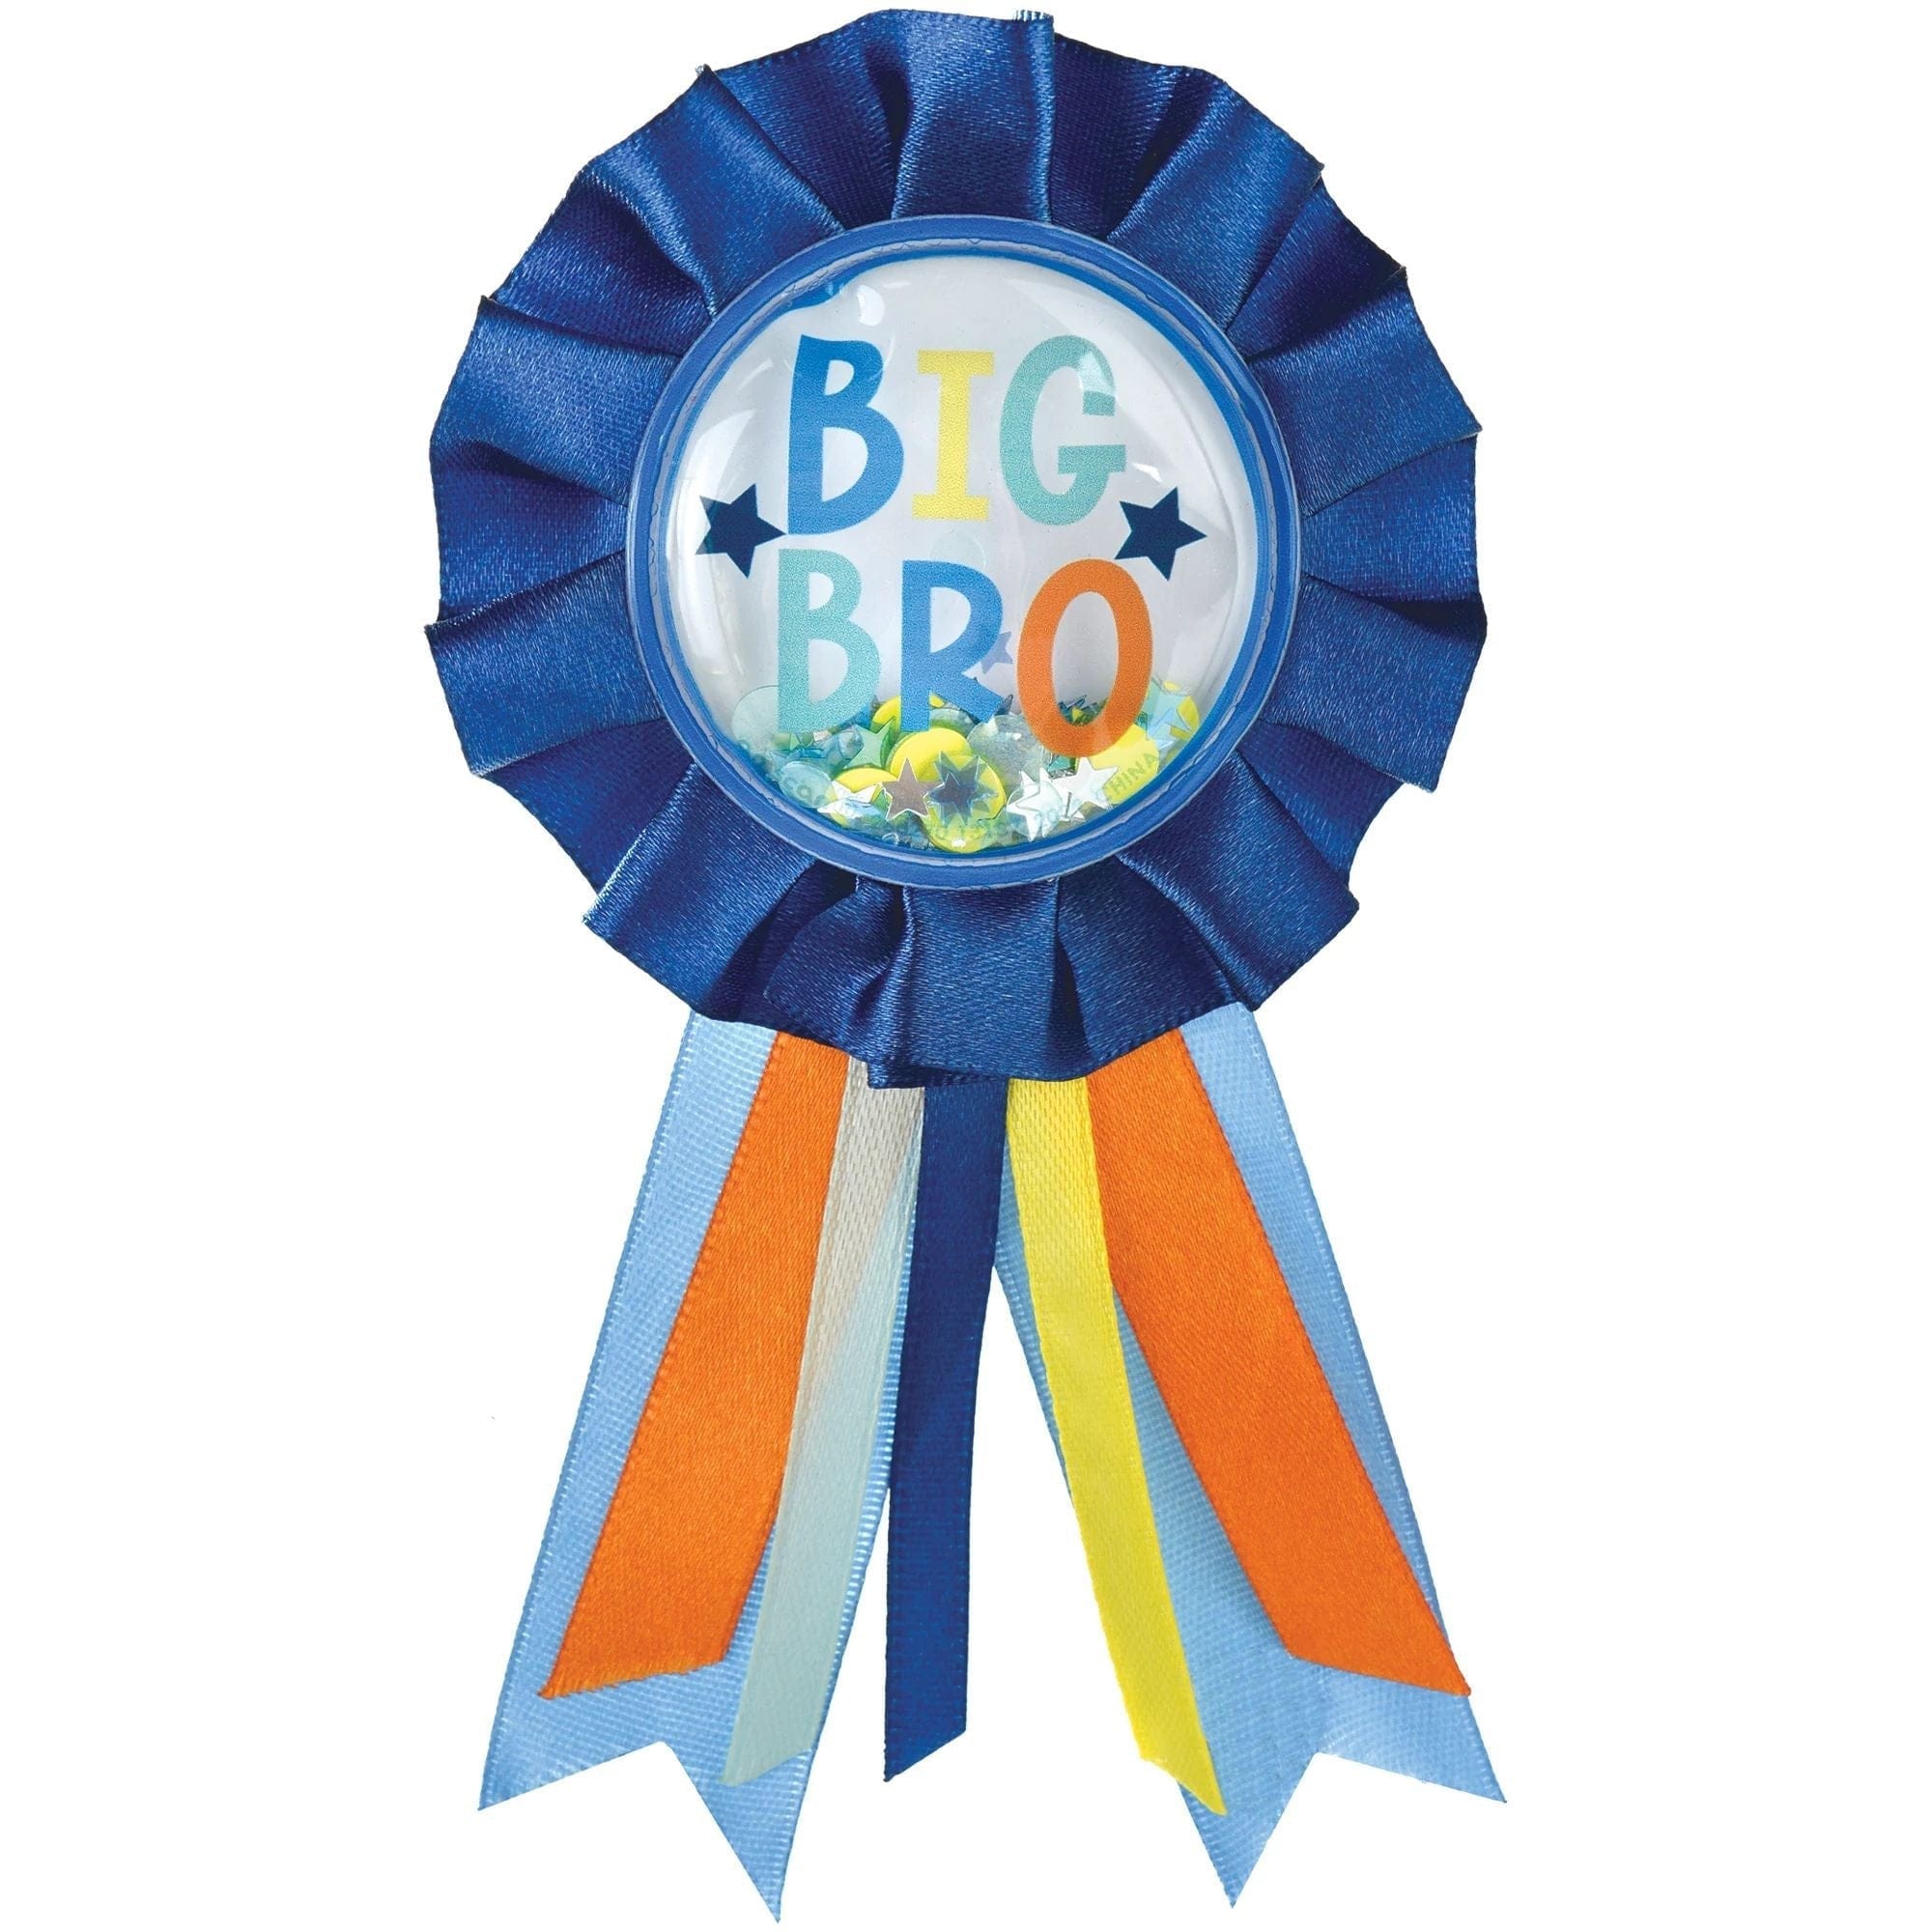 Amscan BABY SHOWER Big Bro Award Ribbon